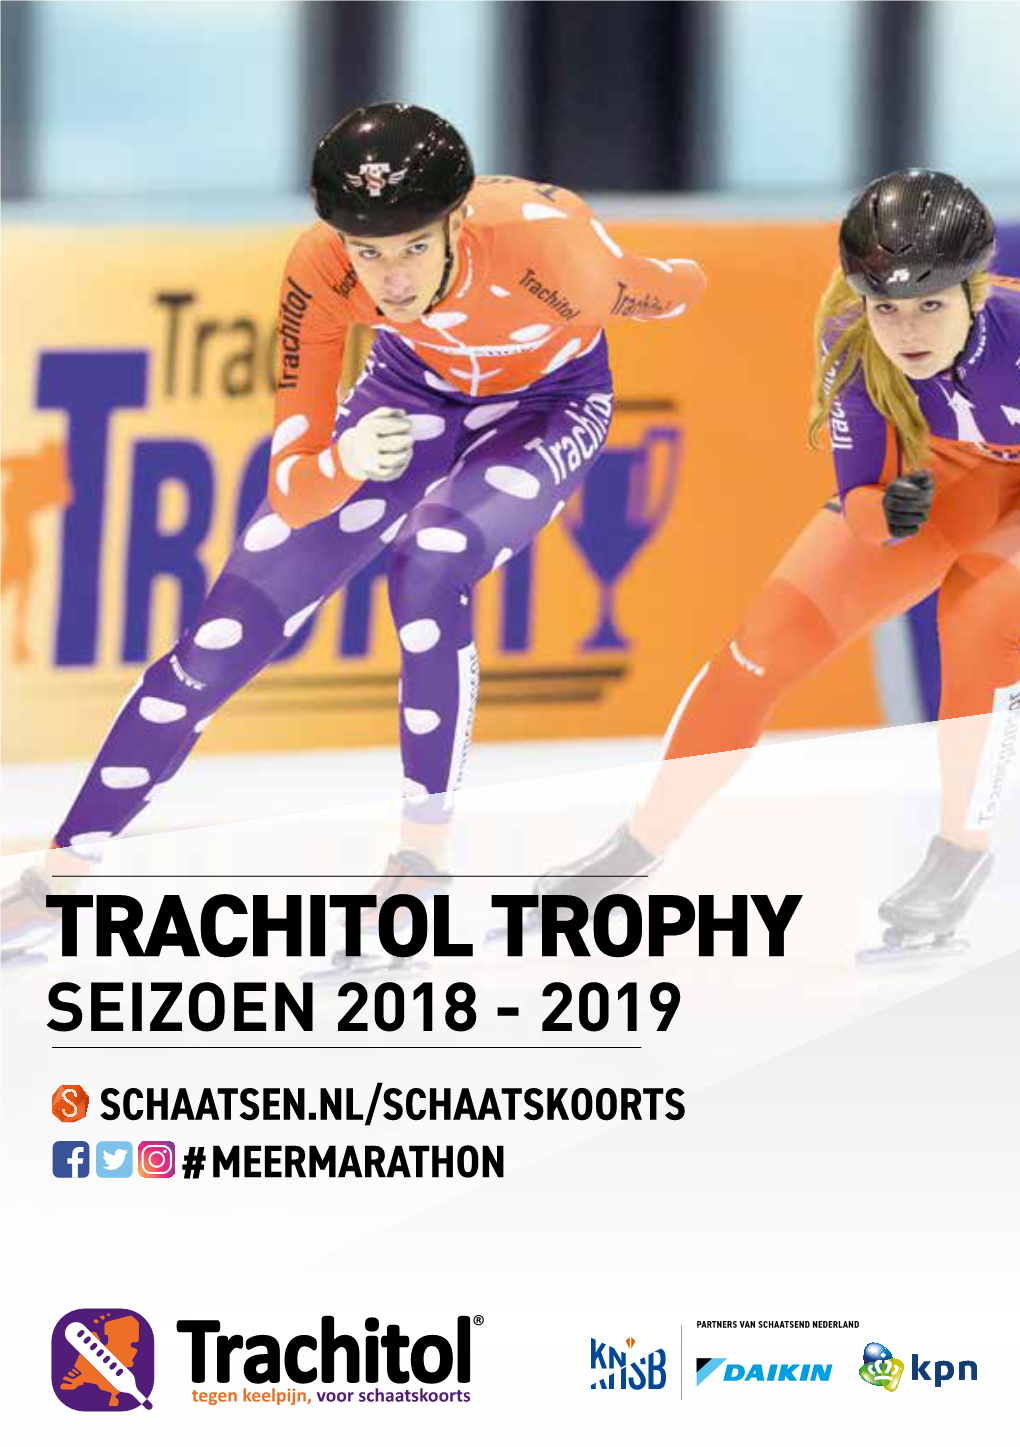 Kpn Marathon Cup Seizoen 2018-20192018 - 2019 Schaatsen.Nl/Marathon #Meermarathon